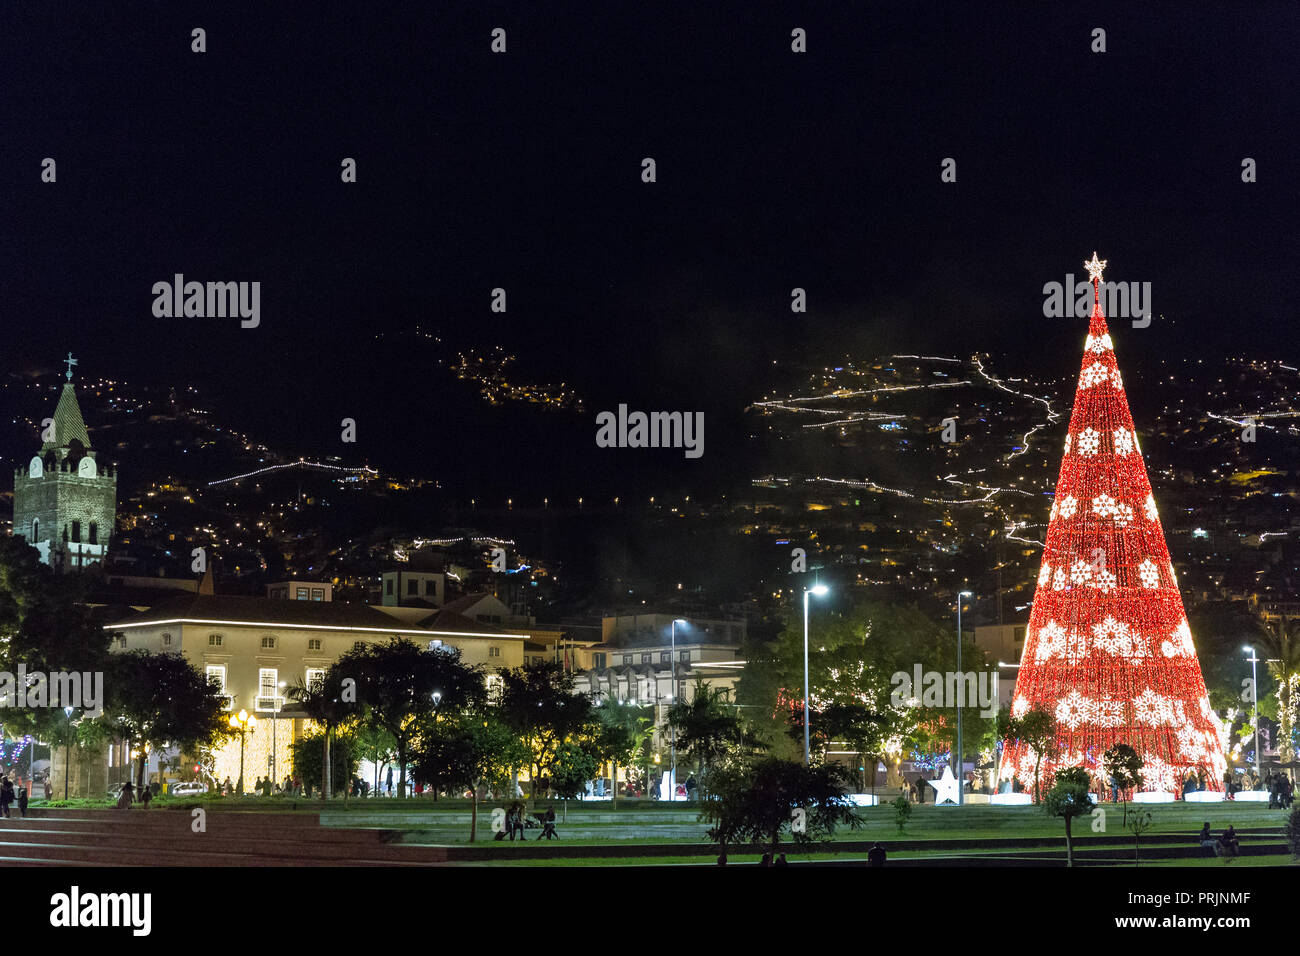 FUNCHAL, PORTUGAL - décembre 7, 2016 : l'éclairage de Noël coloré typique à travers les arbres, des rues, des statues et des bâtiments de la ville de Funchal, Madère, Banque D'Images